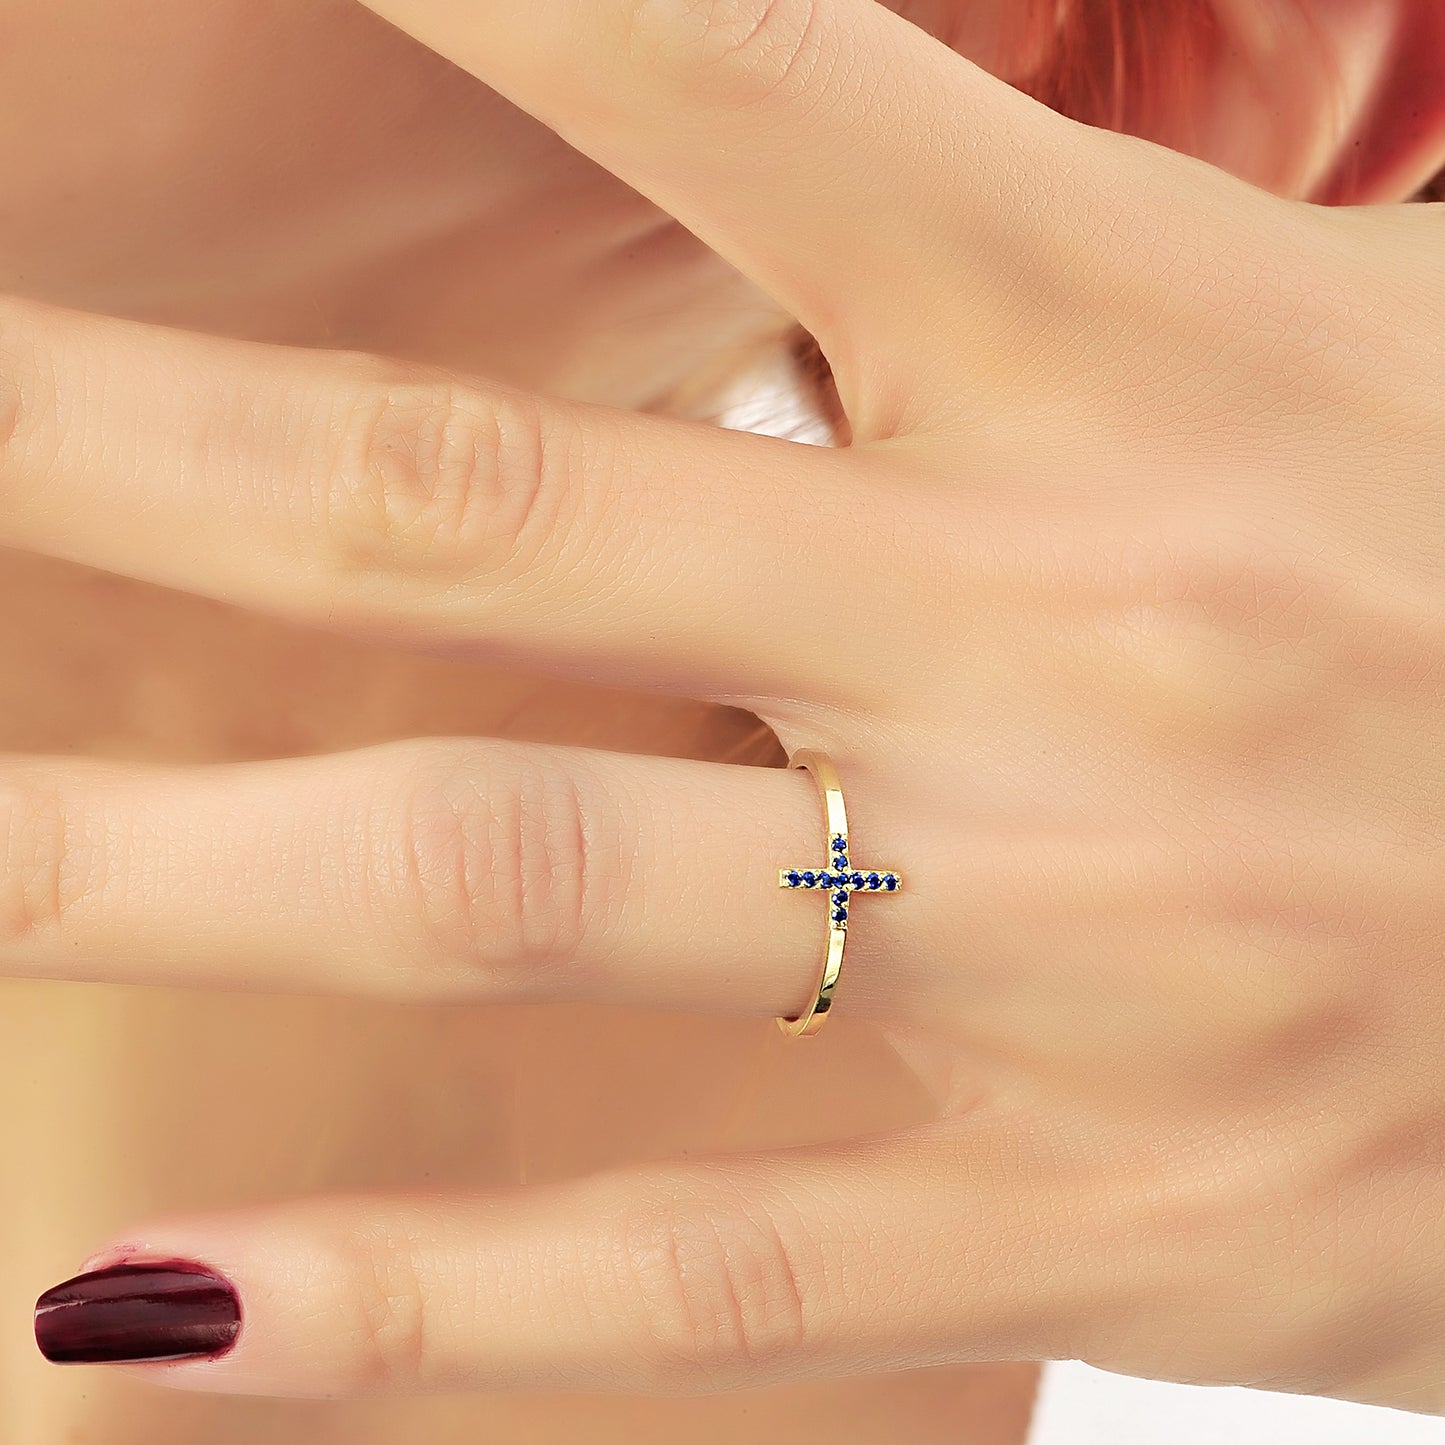 Kruis Blauwe Saffier Plus Vormige Ring Voor Verloving en Huwelijksaanzoek, Minimalistische Handgemaakte Cluster 14k 18k Massief Gouden Ring